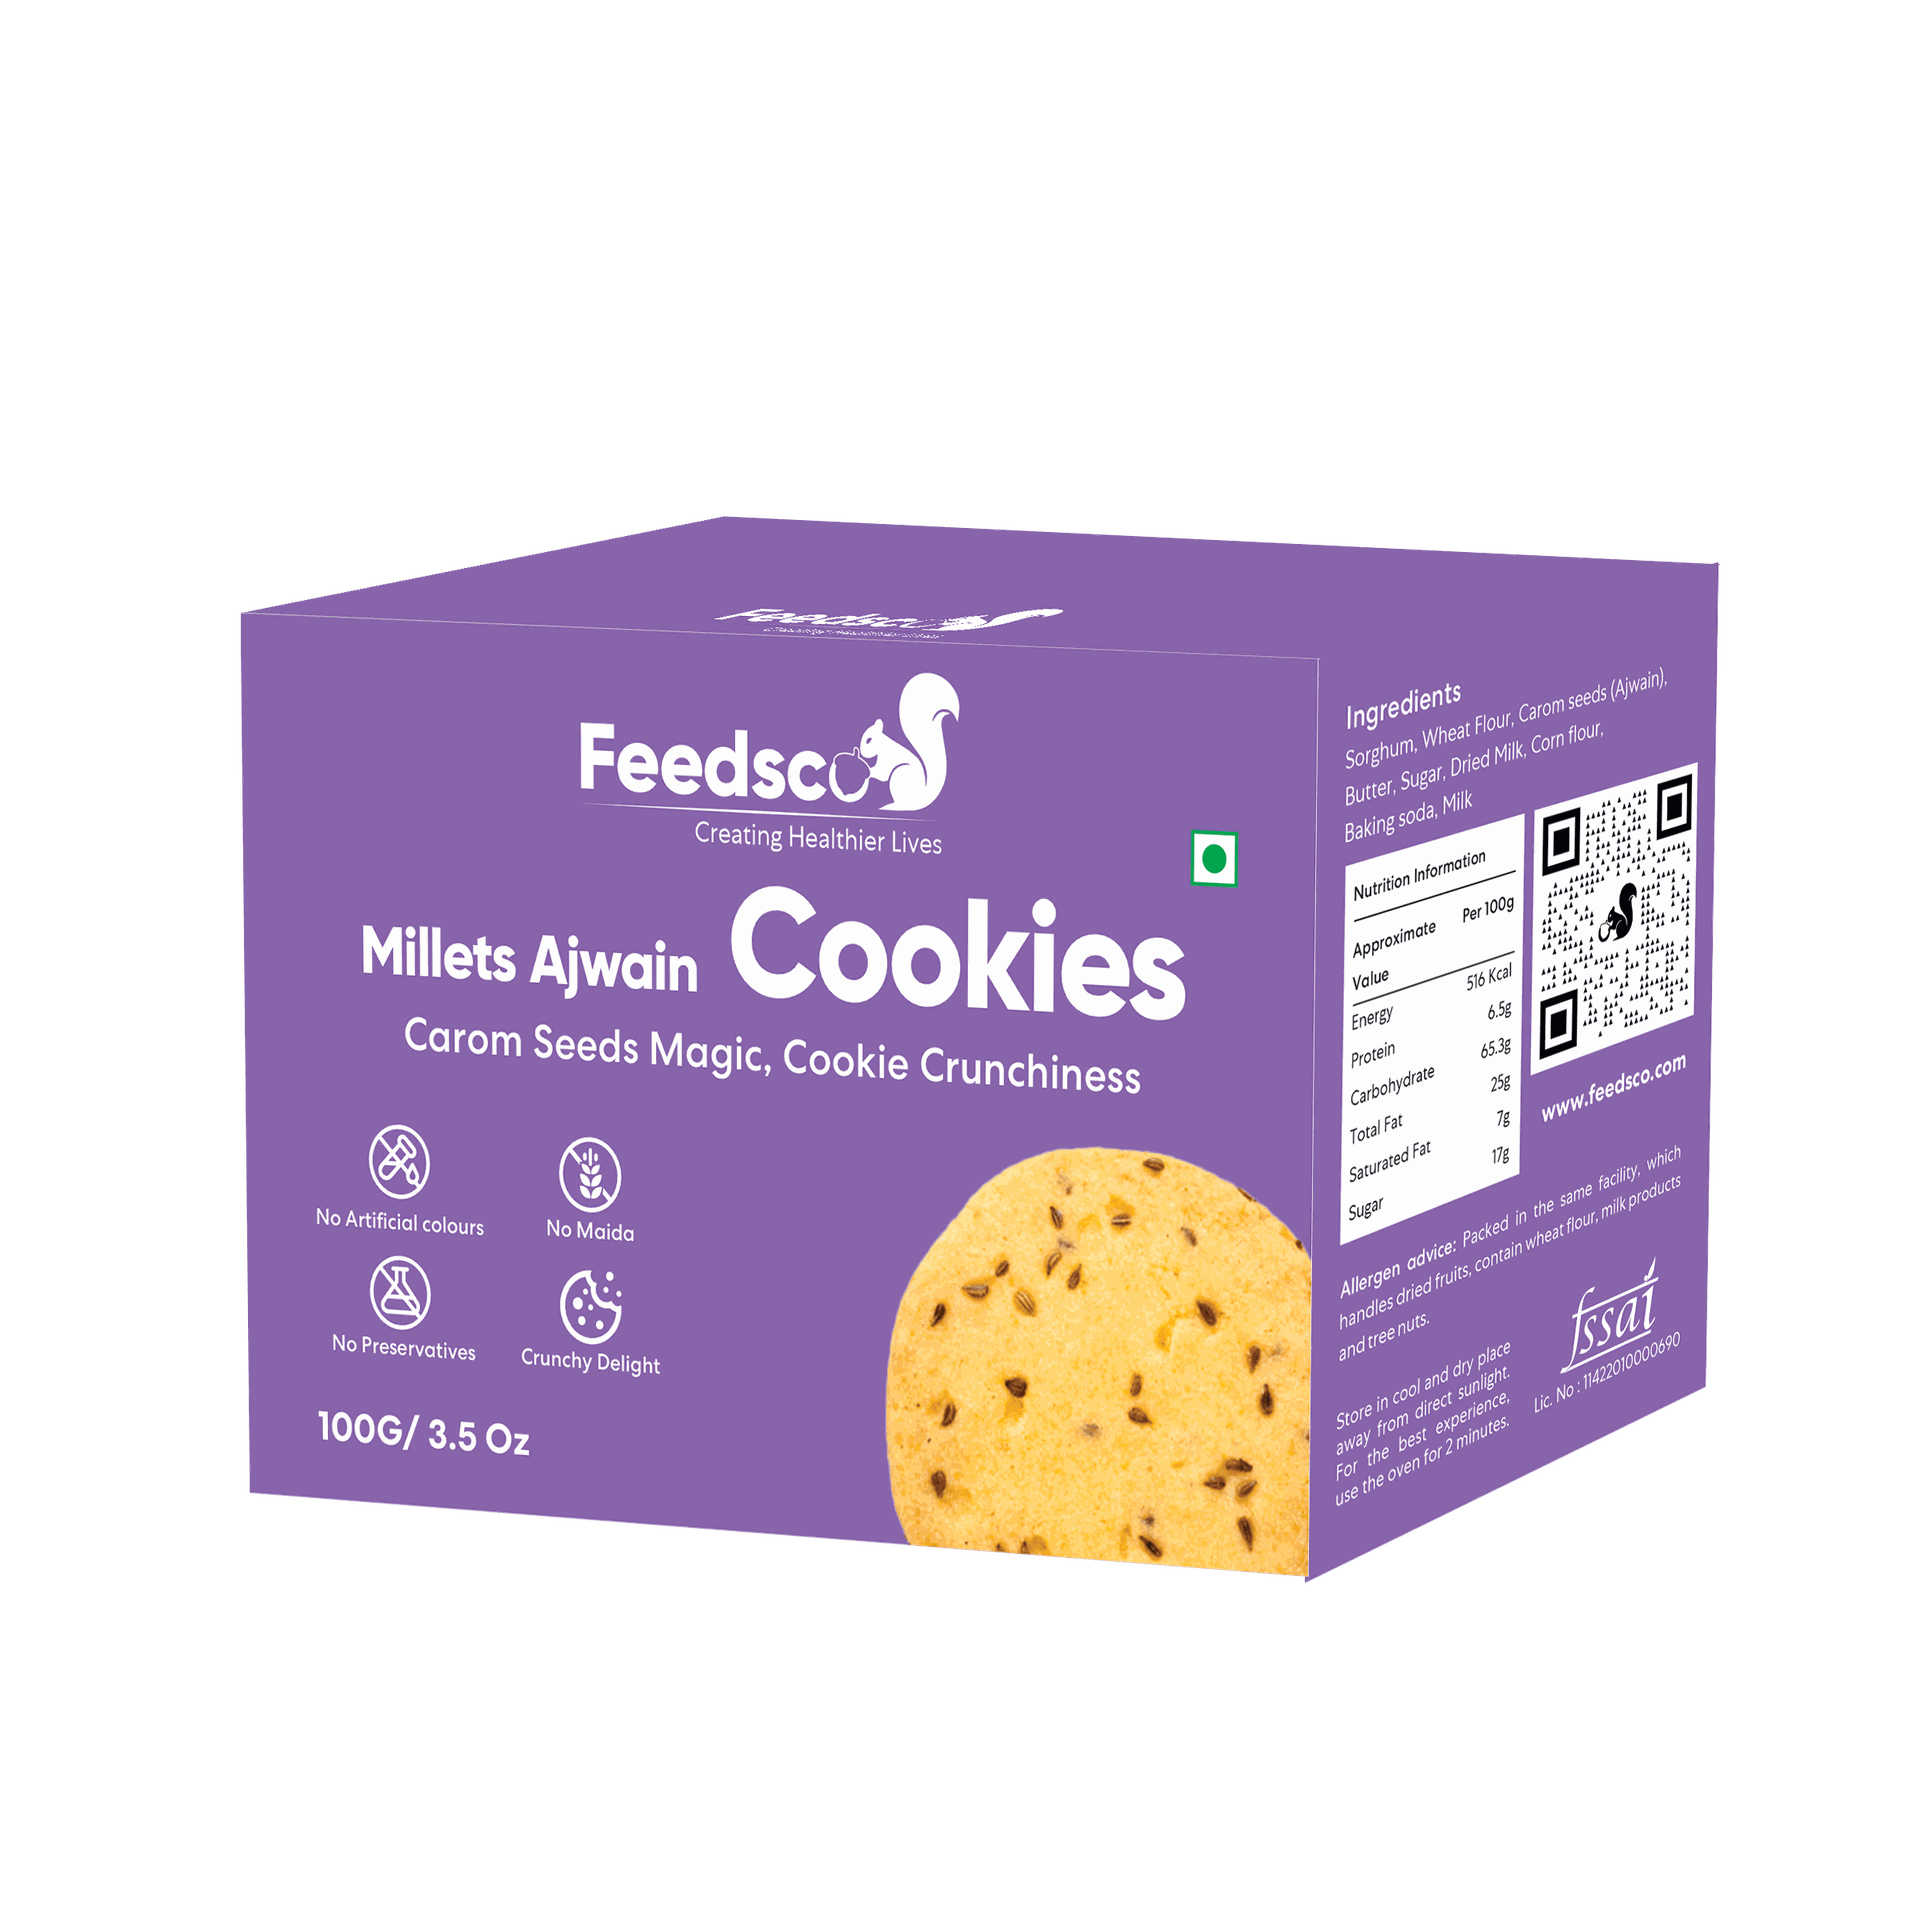 Feedsco Millets Ajwain Cookies Tasty & Healthy Cookies |100g | Pack of 3